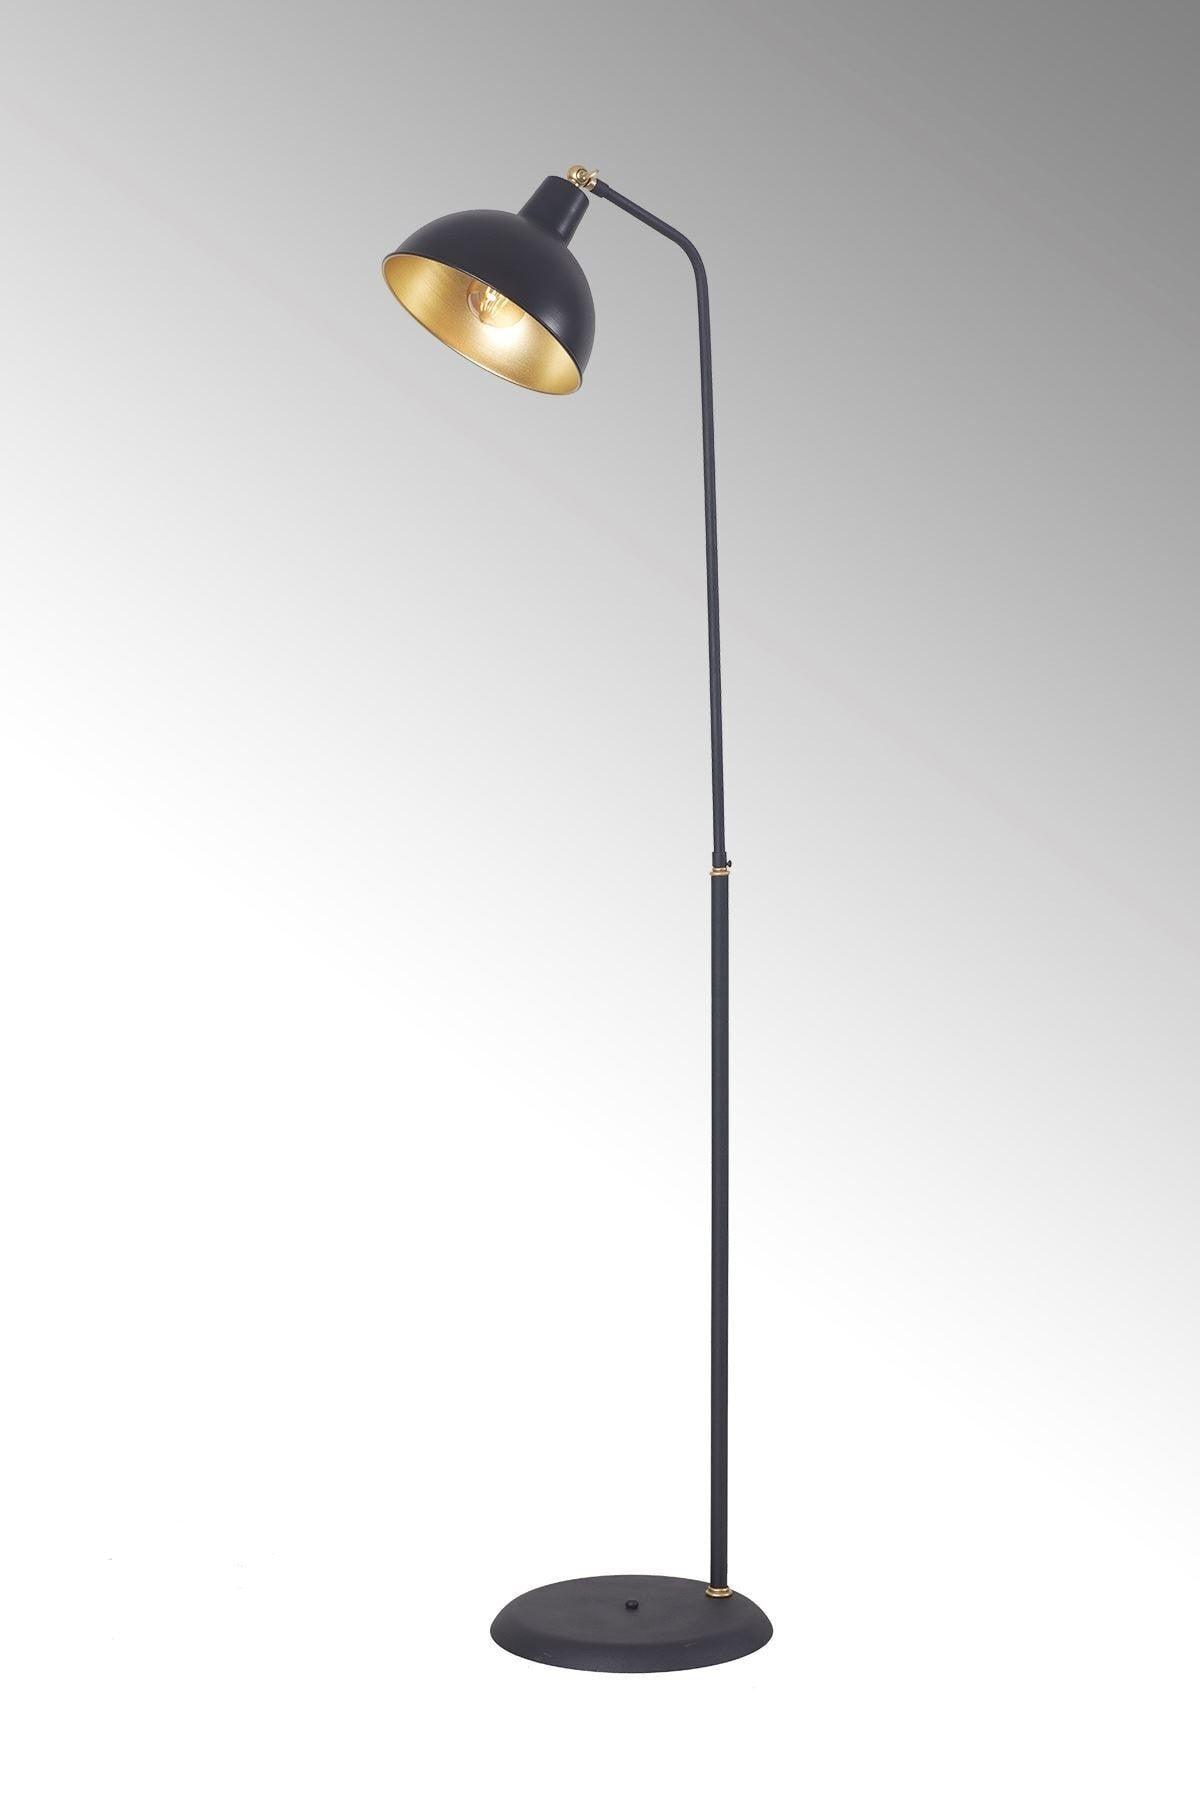 Dolce Yellow-black Metal Body Design Luxury Floor Lighting Floor Lamp - Swordslife